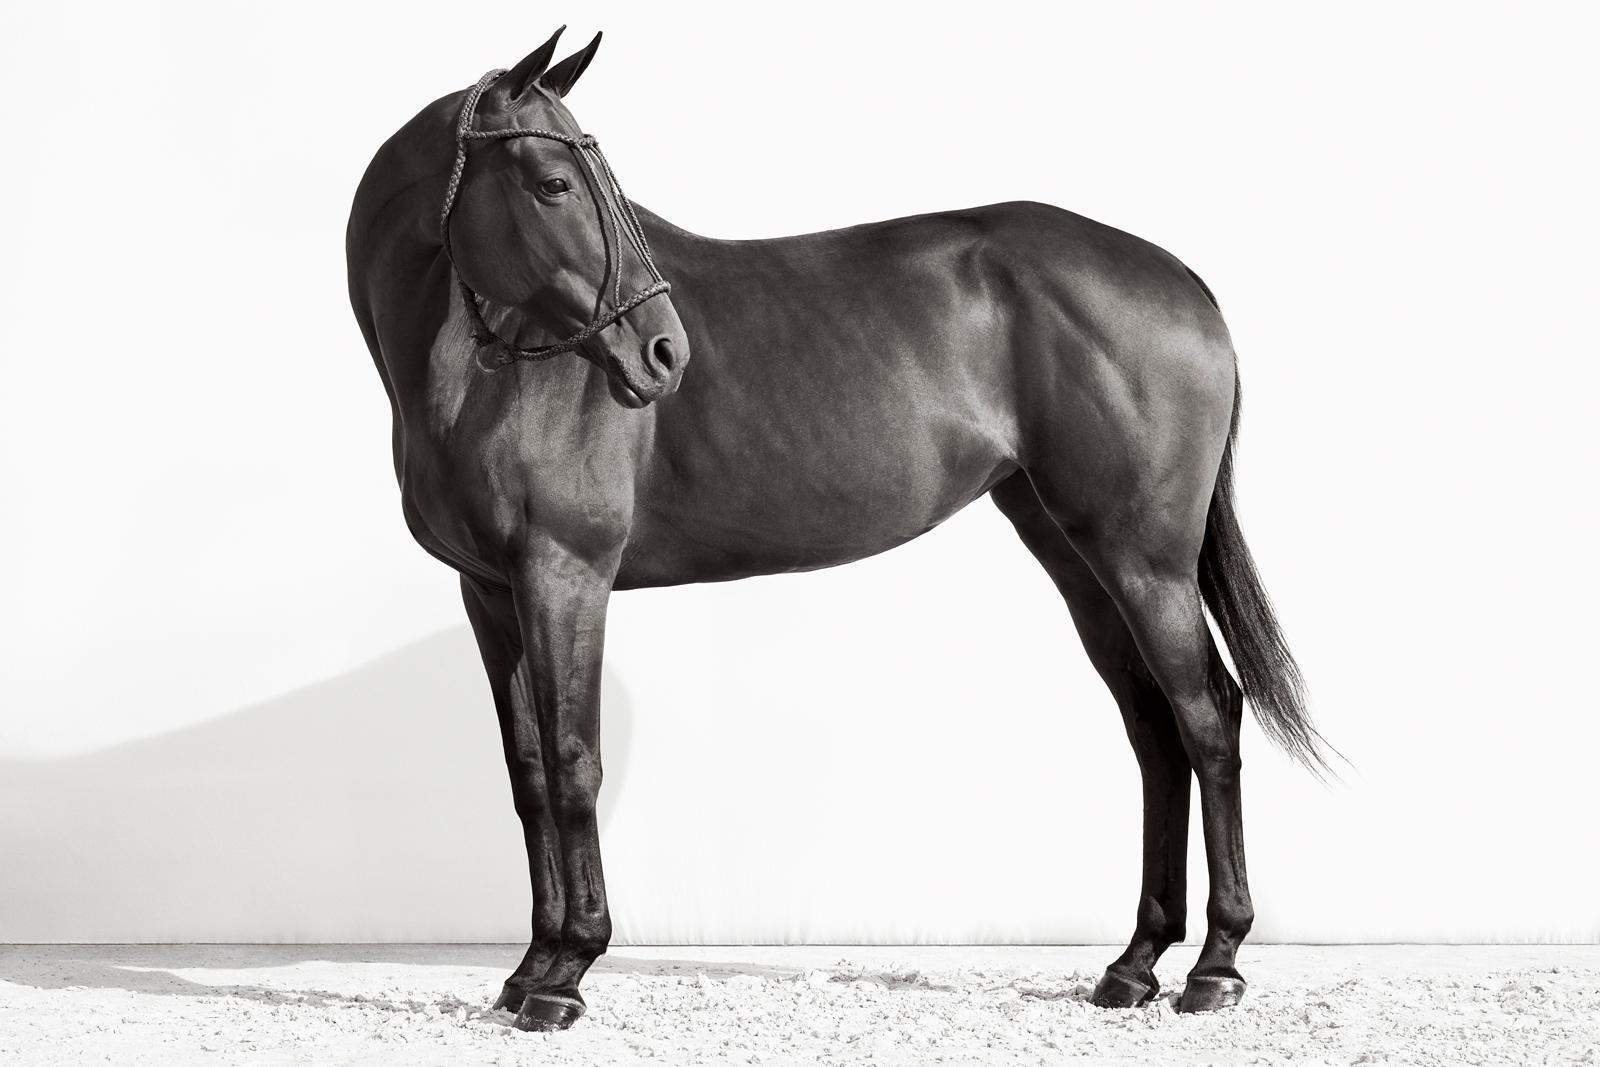 Black and White Photograph Drew Doggett - Un portrait complet d'un cheval sombre avec un buste argentin